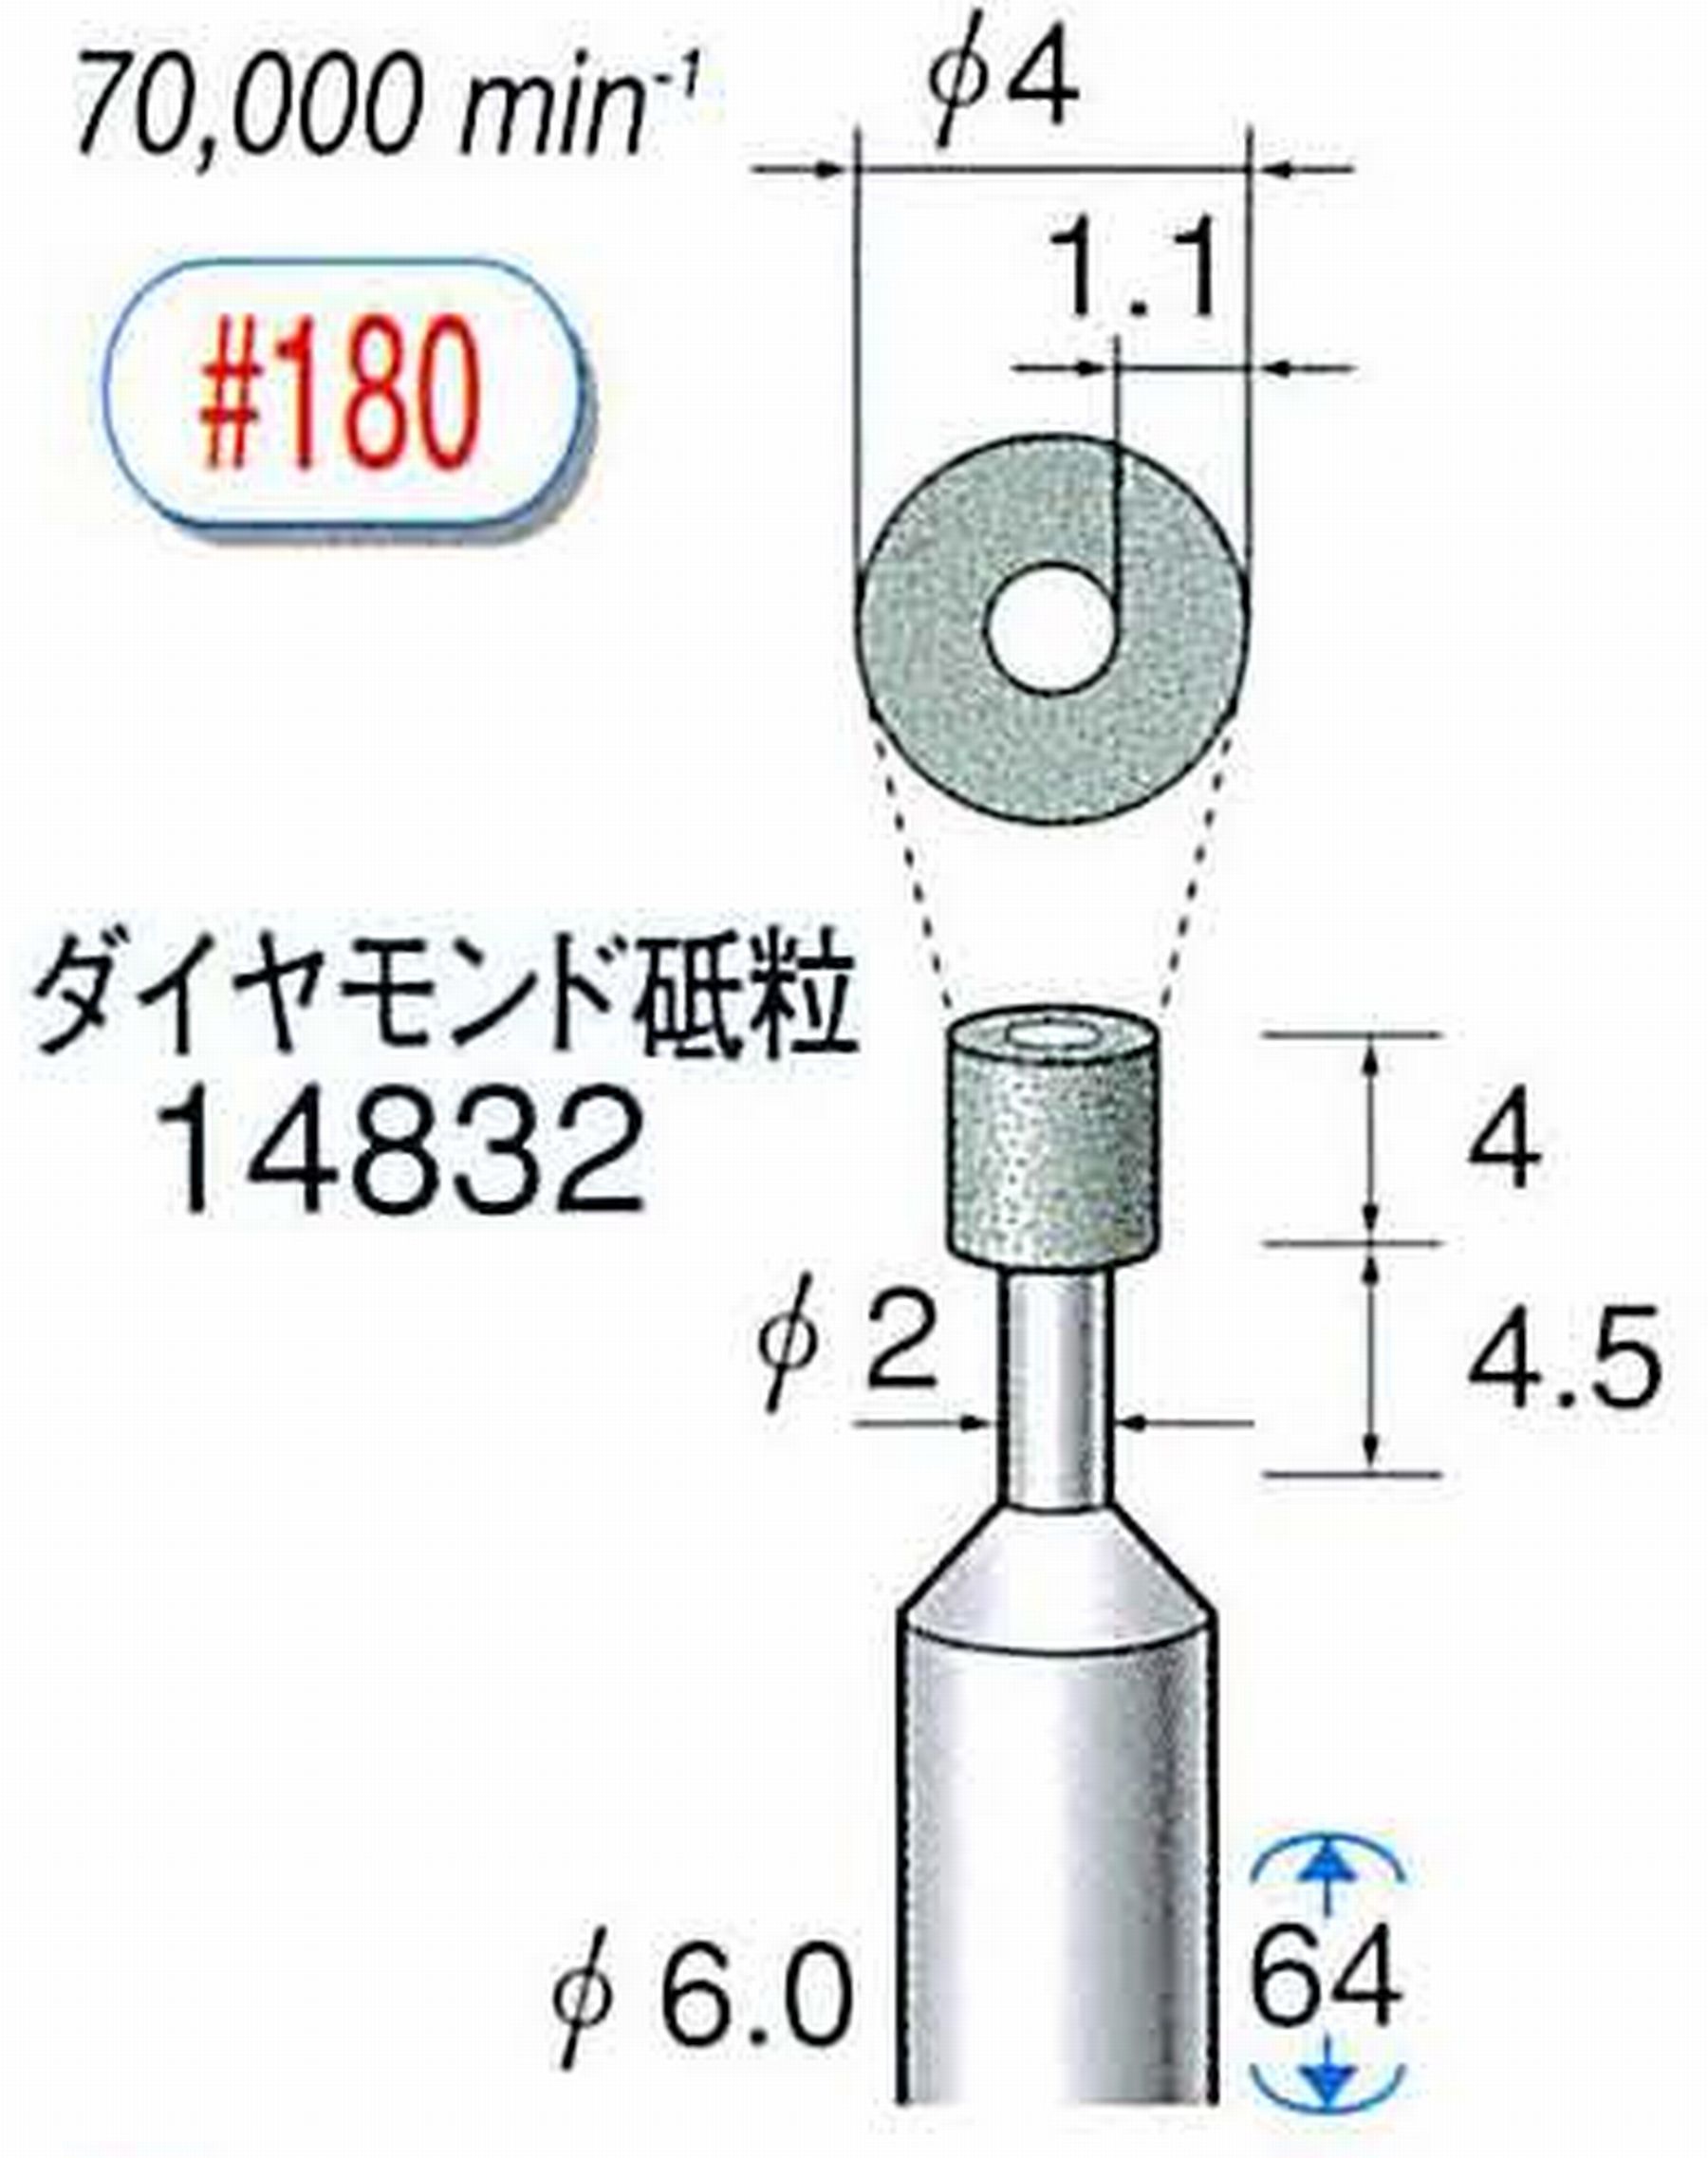 ナカニシ/NAKANISHI ビトリファイドダイヤモンド砥石 ダイヤモンド砥粒 軸径(シャンク)φ6.0mm 14832